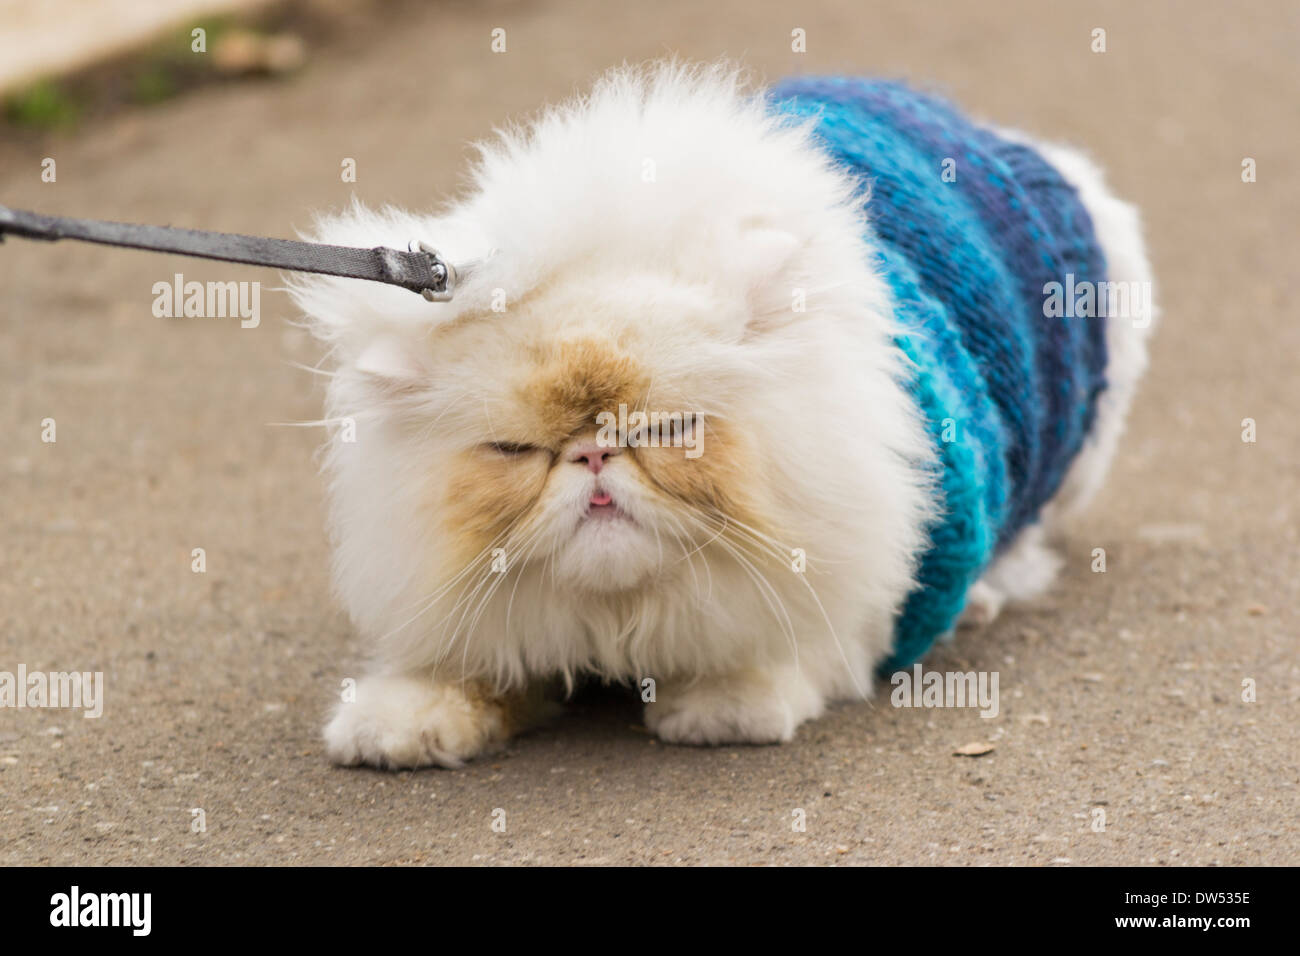 Himalayan Cat Persian Cat Refusing To Move Stock Photo Alamy